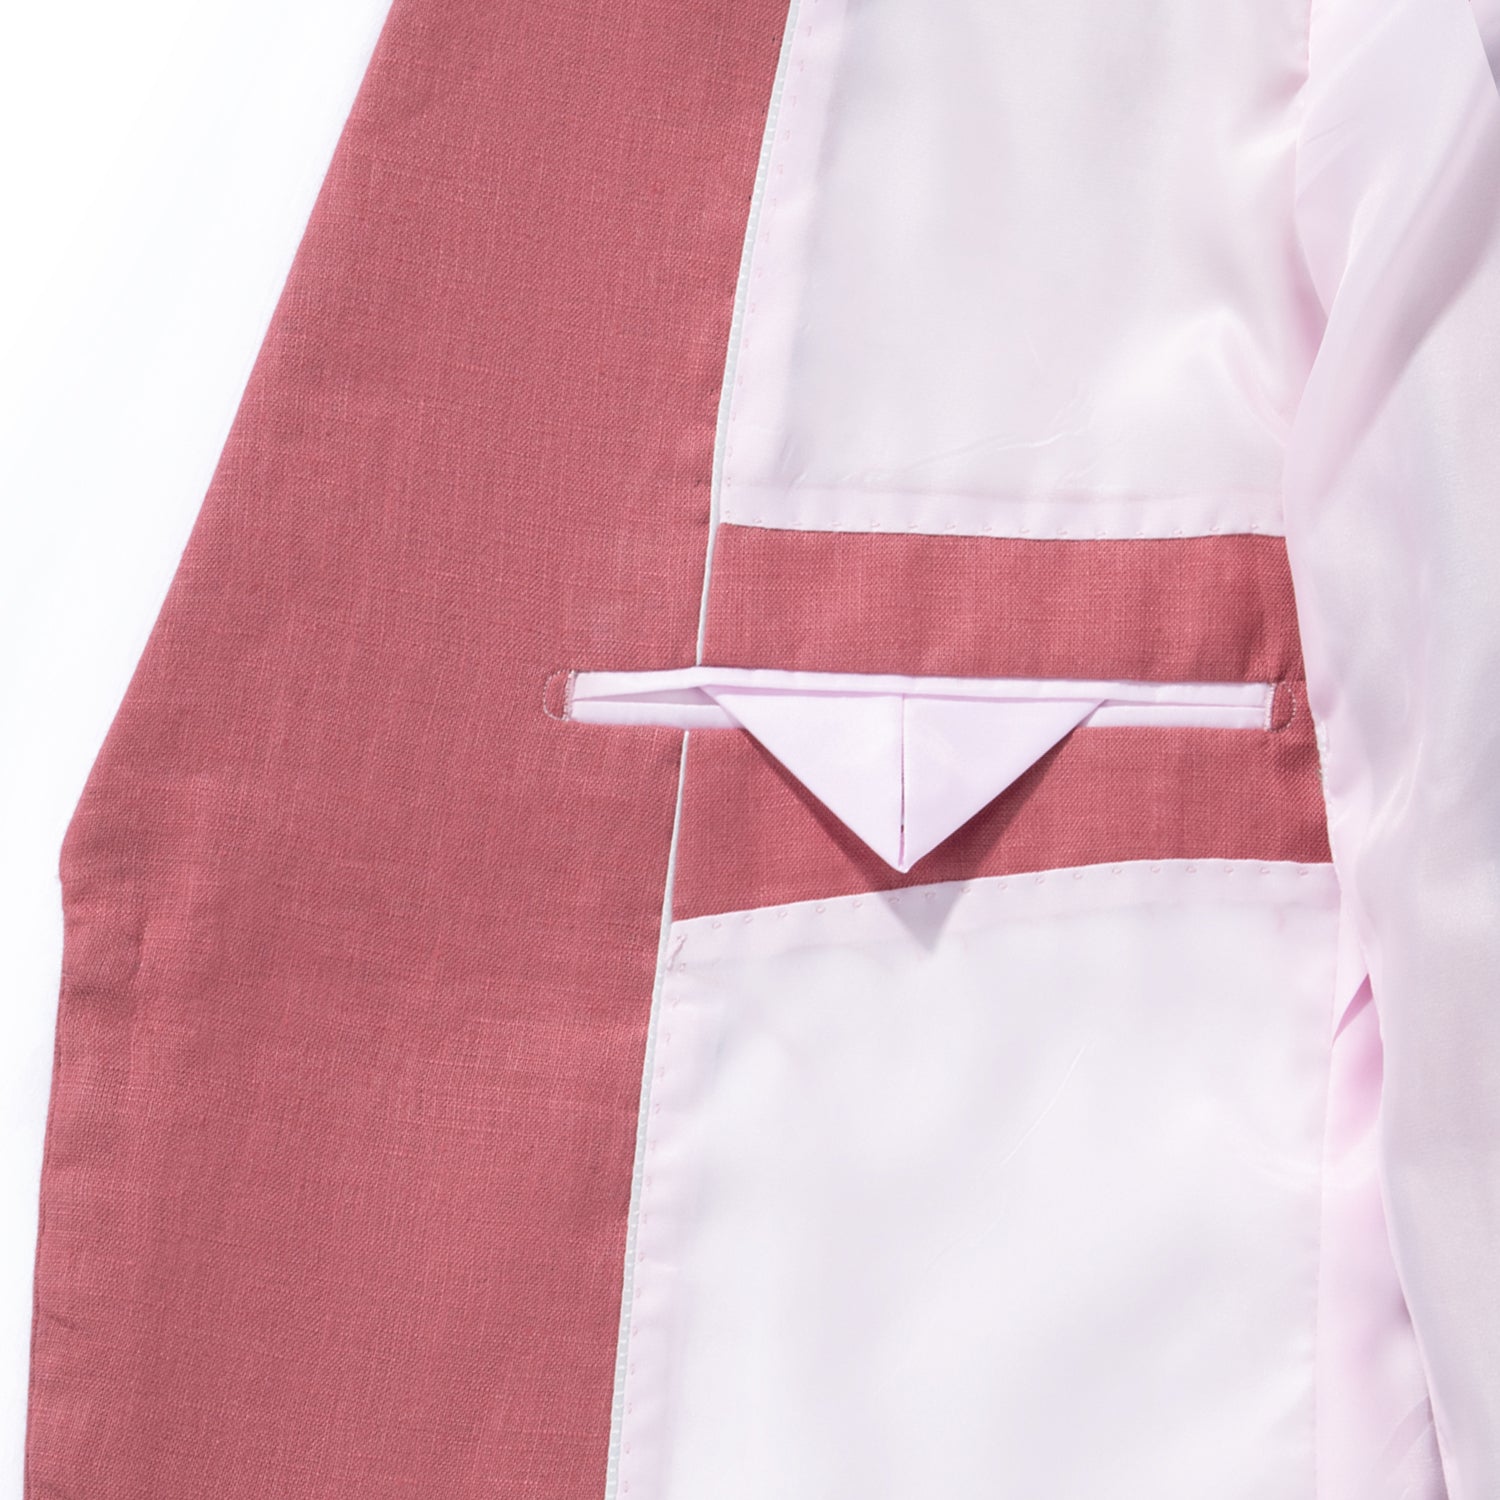 1PA1 Men's 100% Linen Red Jacket Trousers 2-Pieces Suit Set